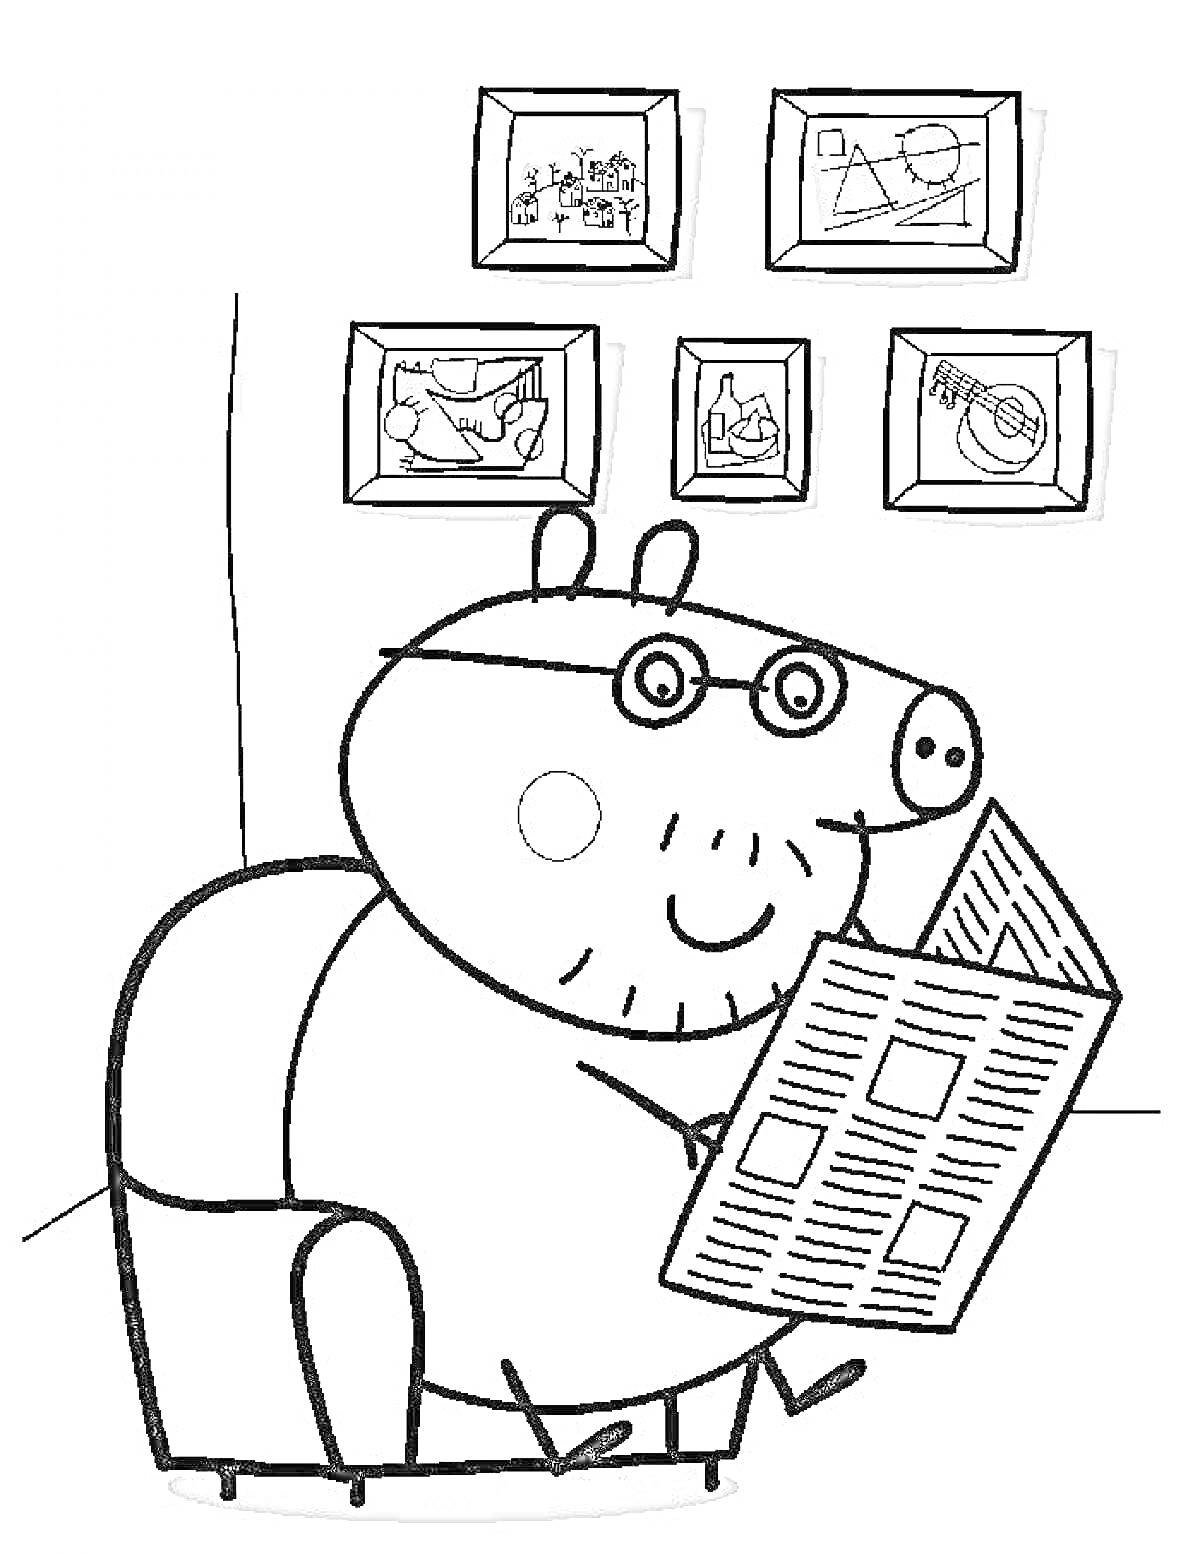 Раскраска Папа Свин читает газету в кресле, на стене висят пять картин